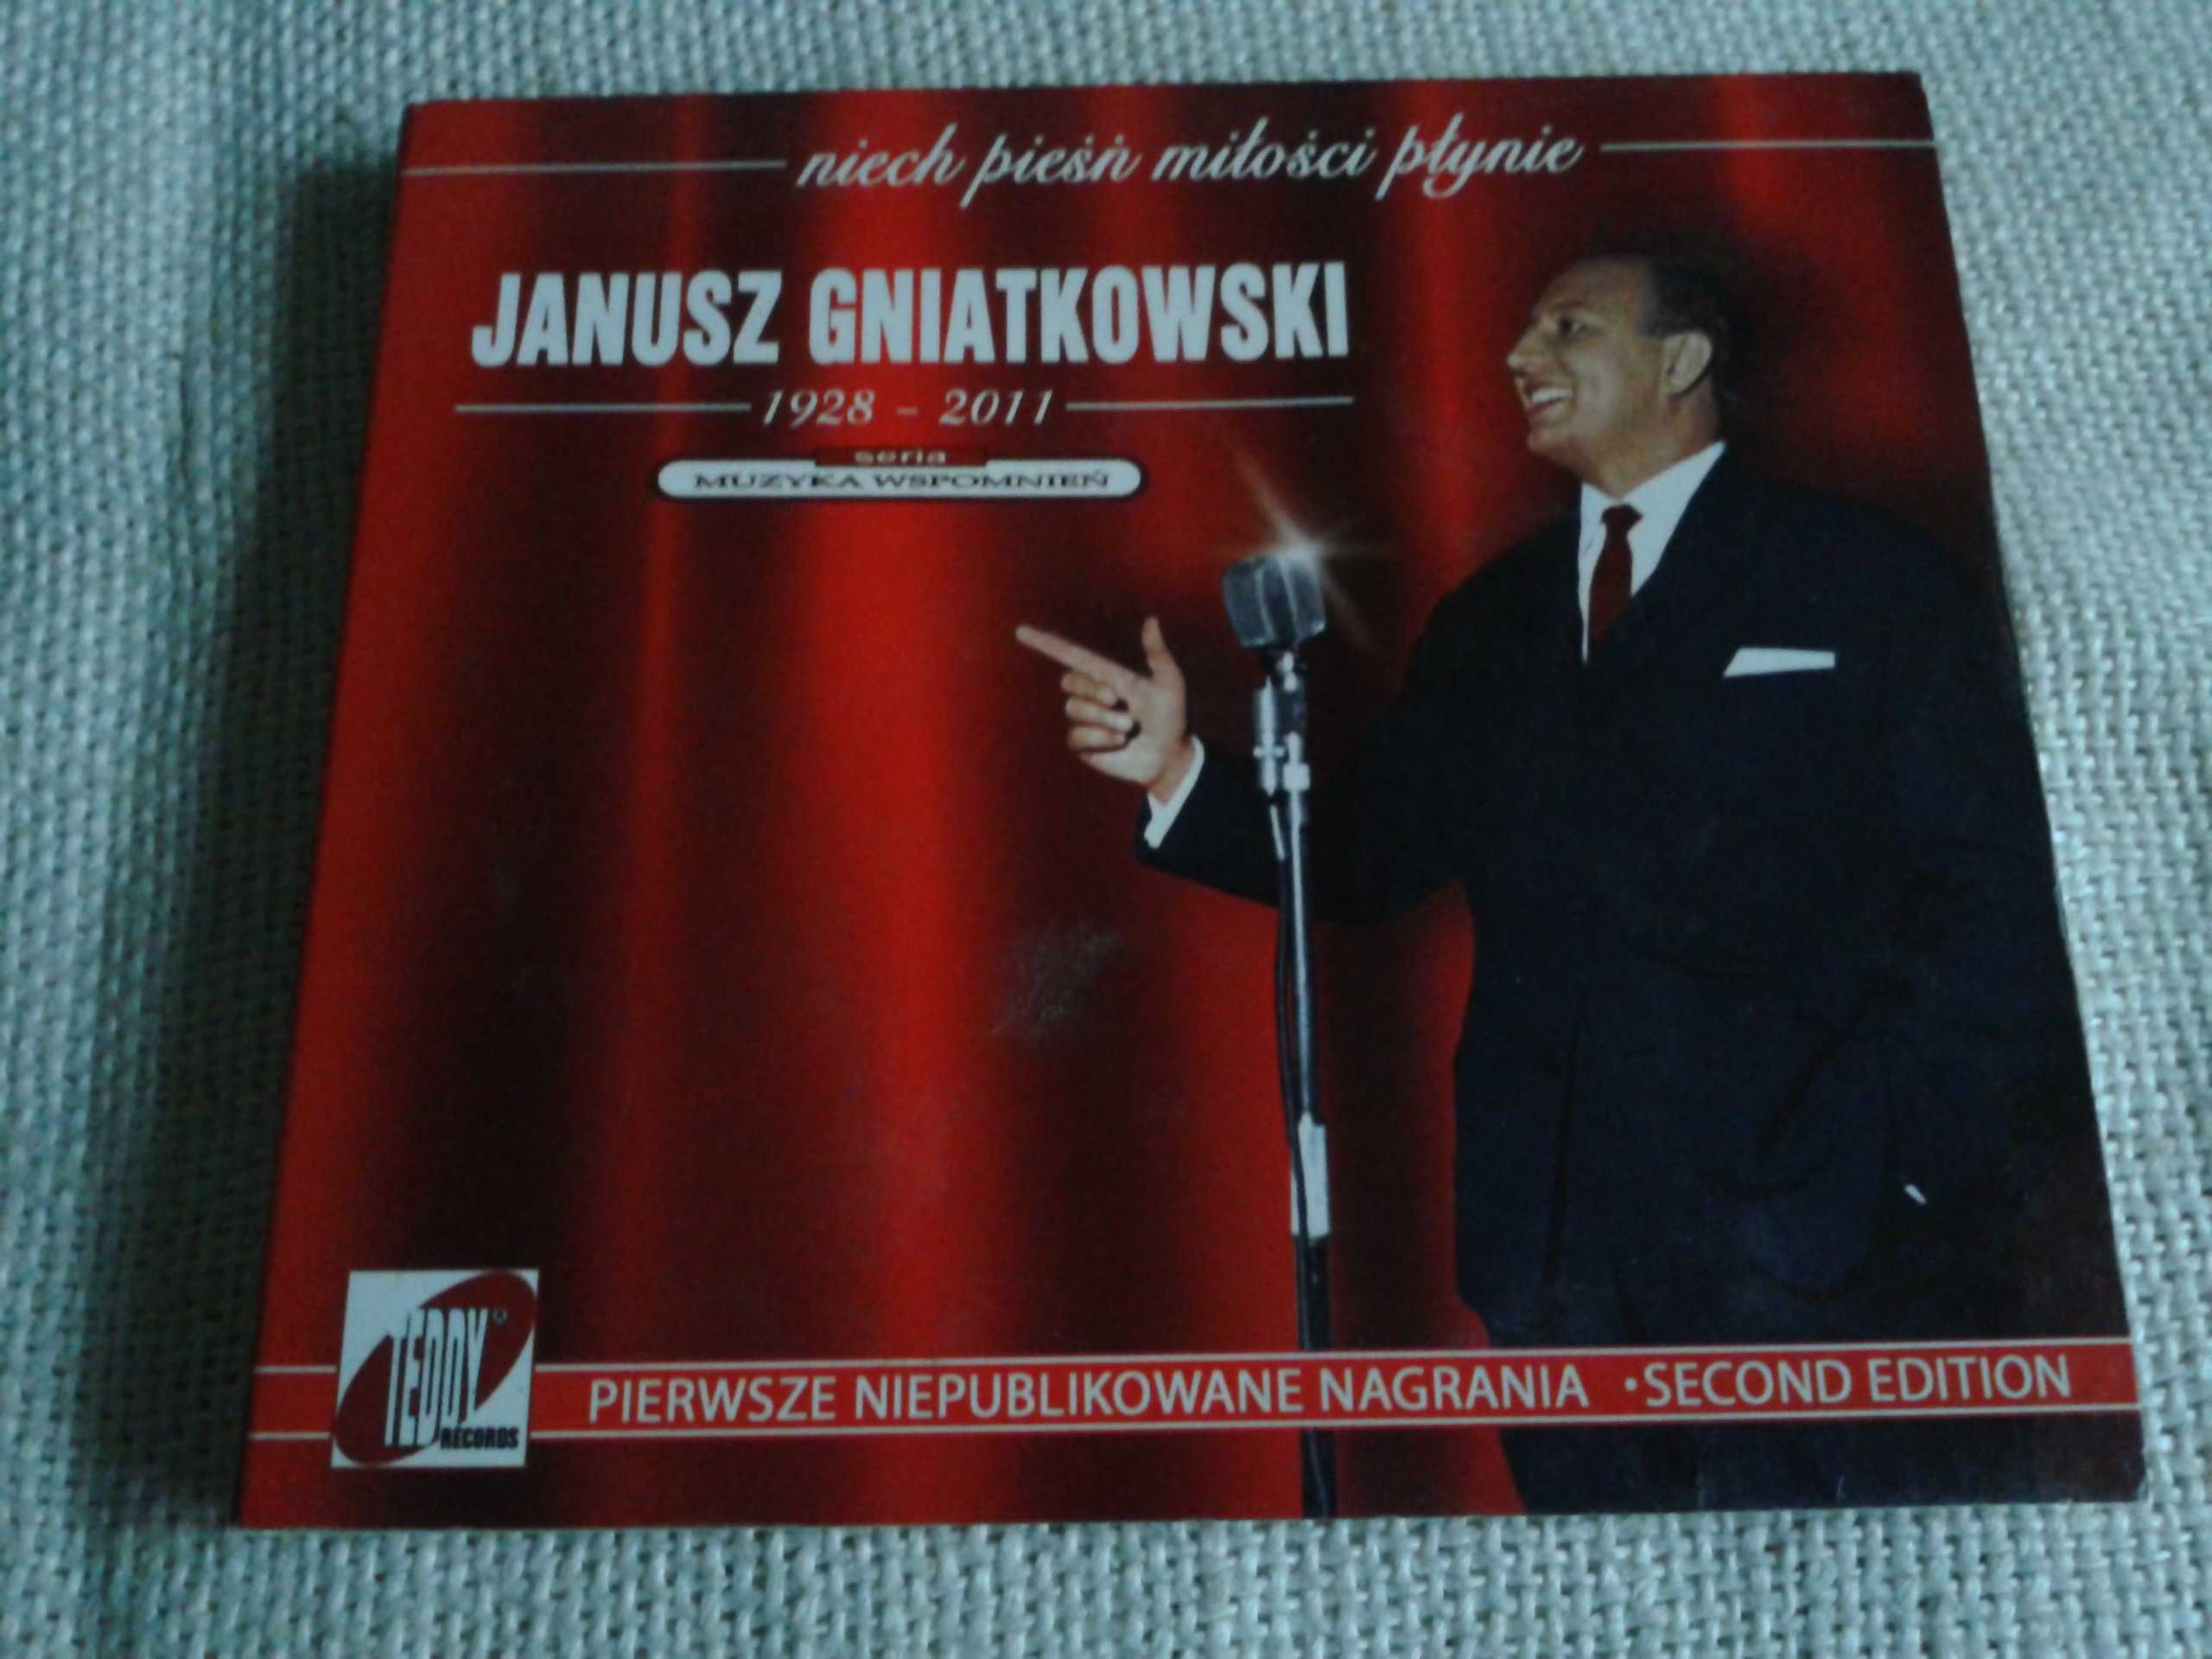 Janusz Gniatkowski - Niech Pieśń Miłości Płynie  CD